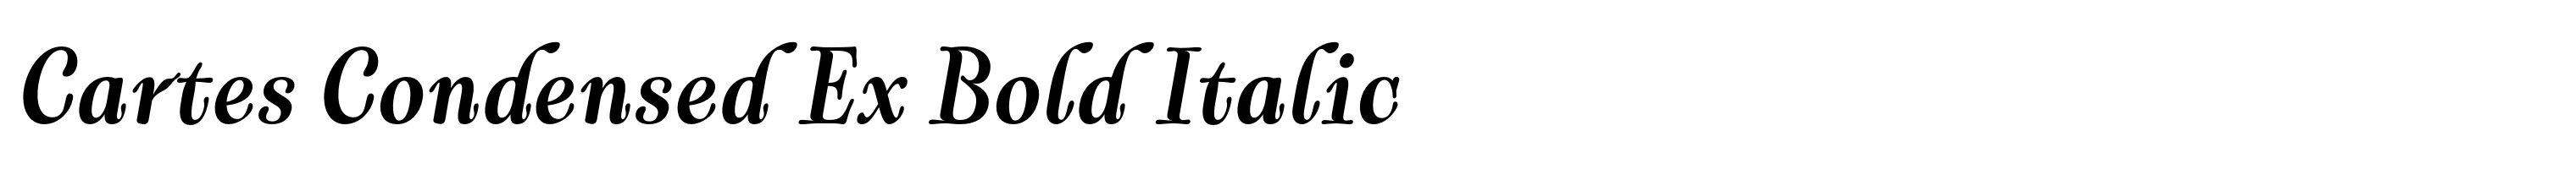 Cartes Condensed Ex Bold Italic